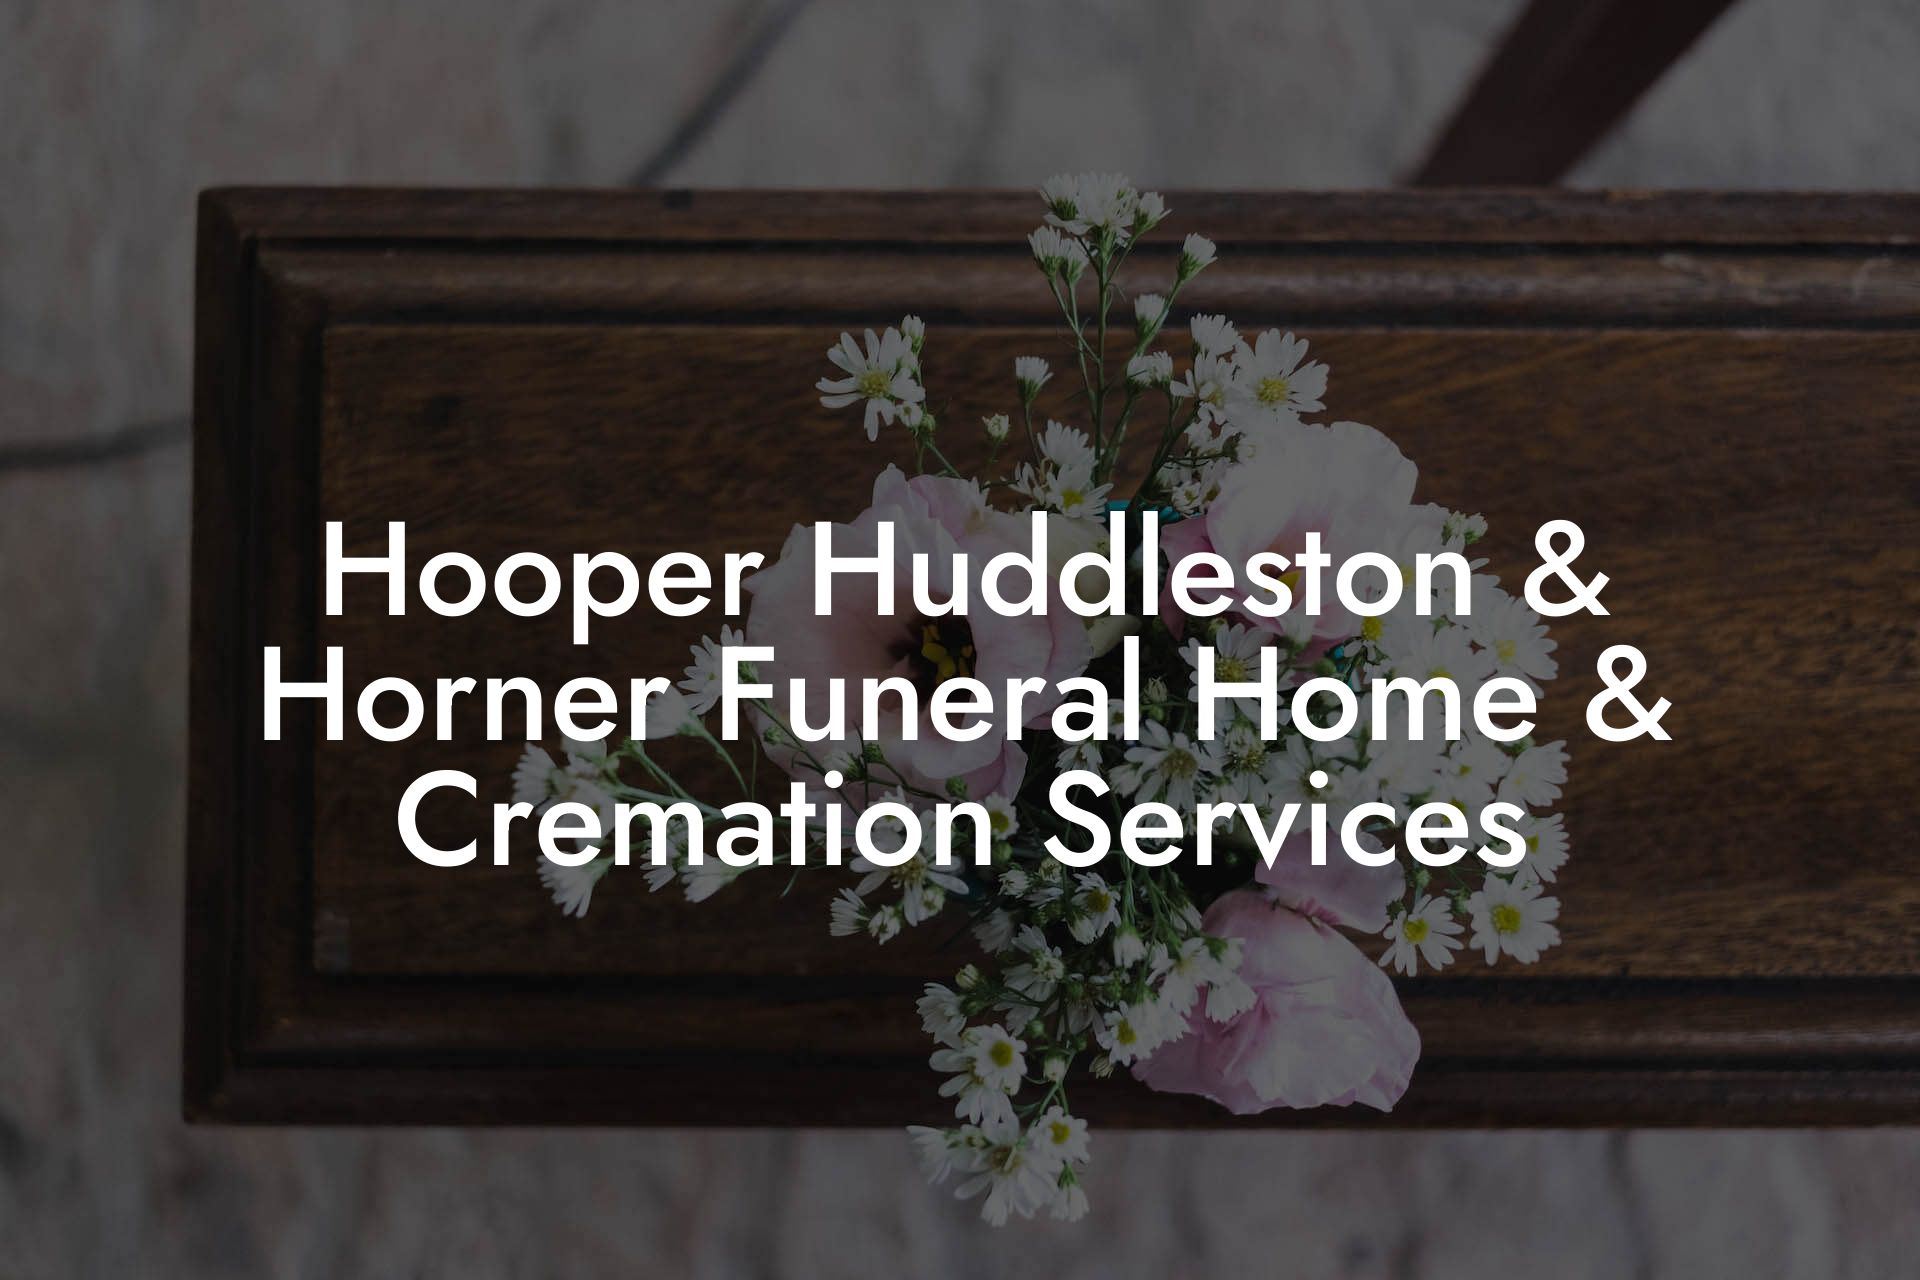 Hooper Huddleston & Horner Funeral Home & Cremation Services